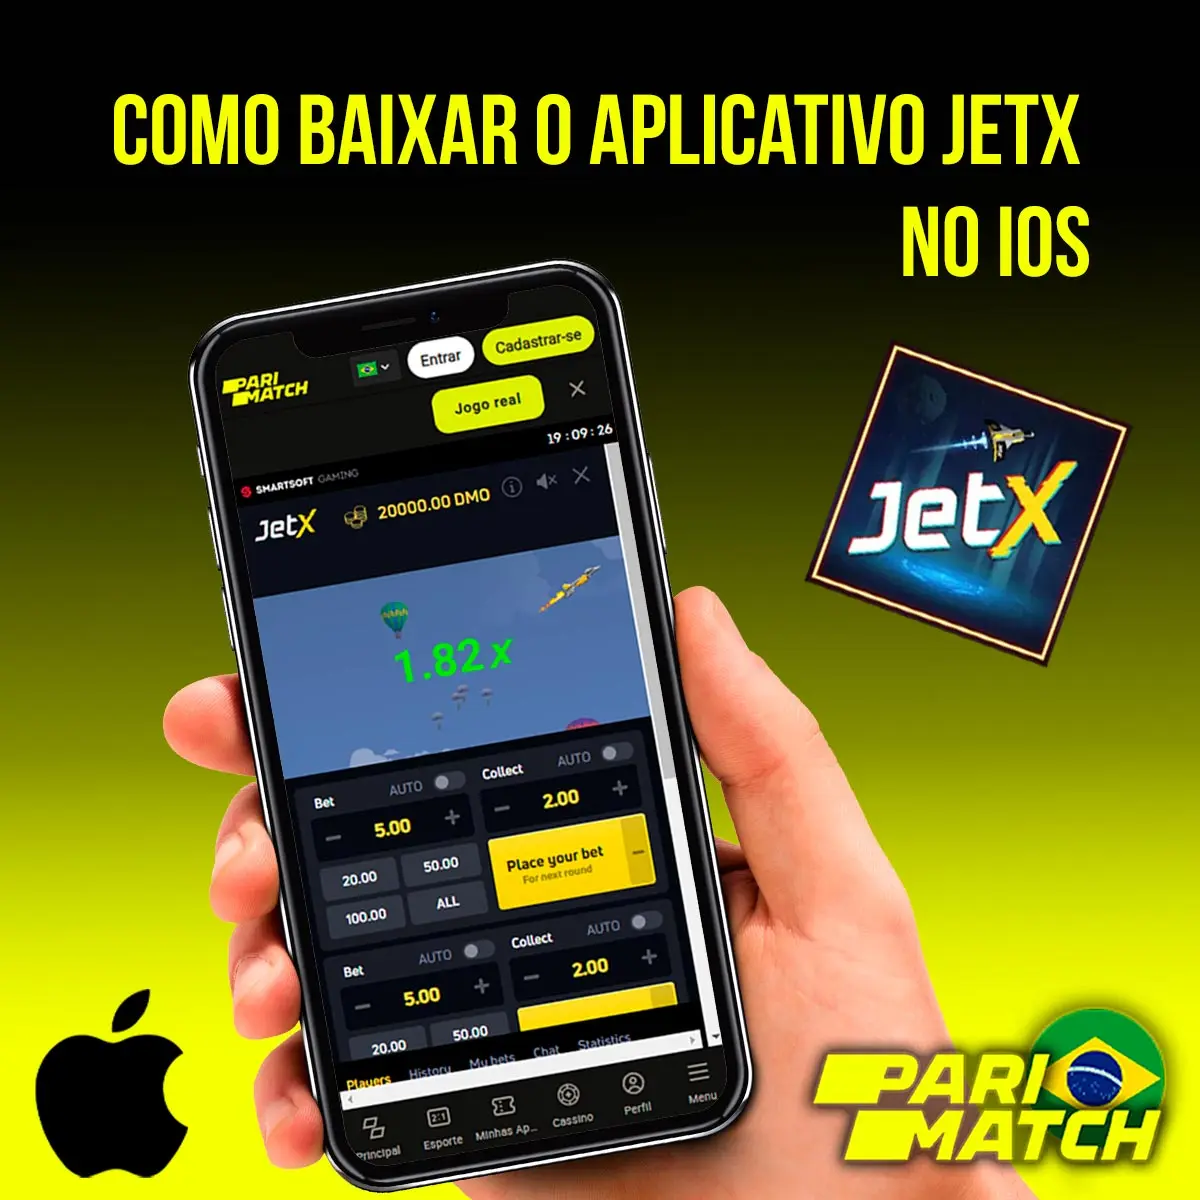 Aplicativo móvel JetX para iOS da casa de apostas Parimatch no Brasil